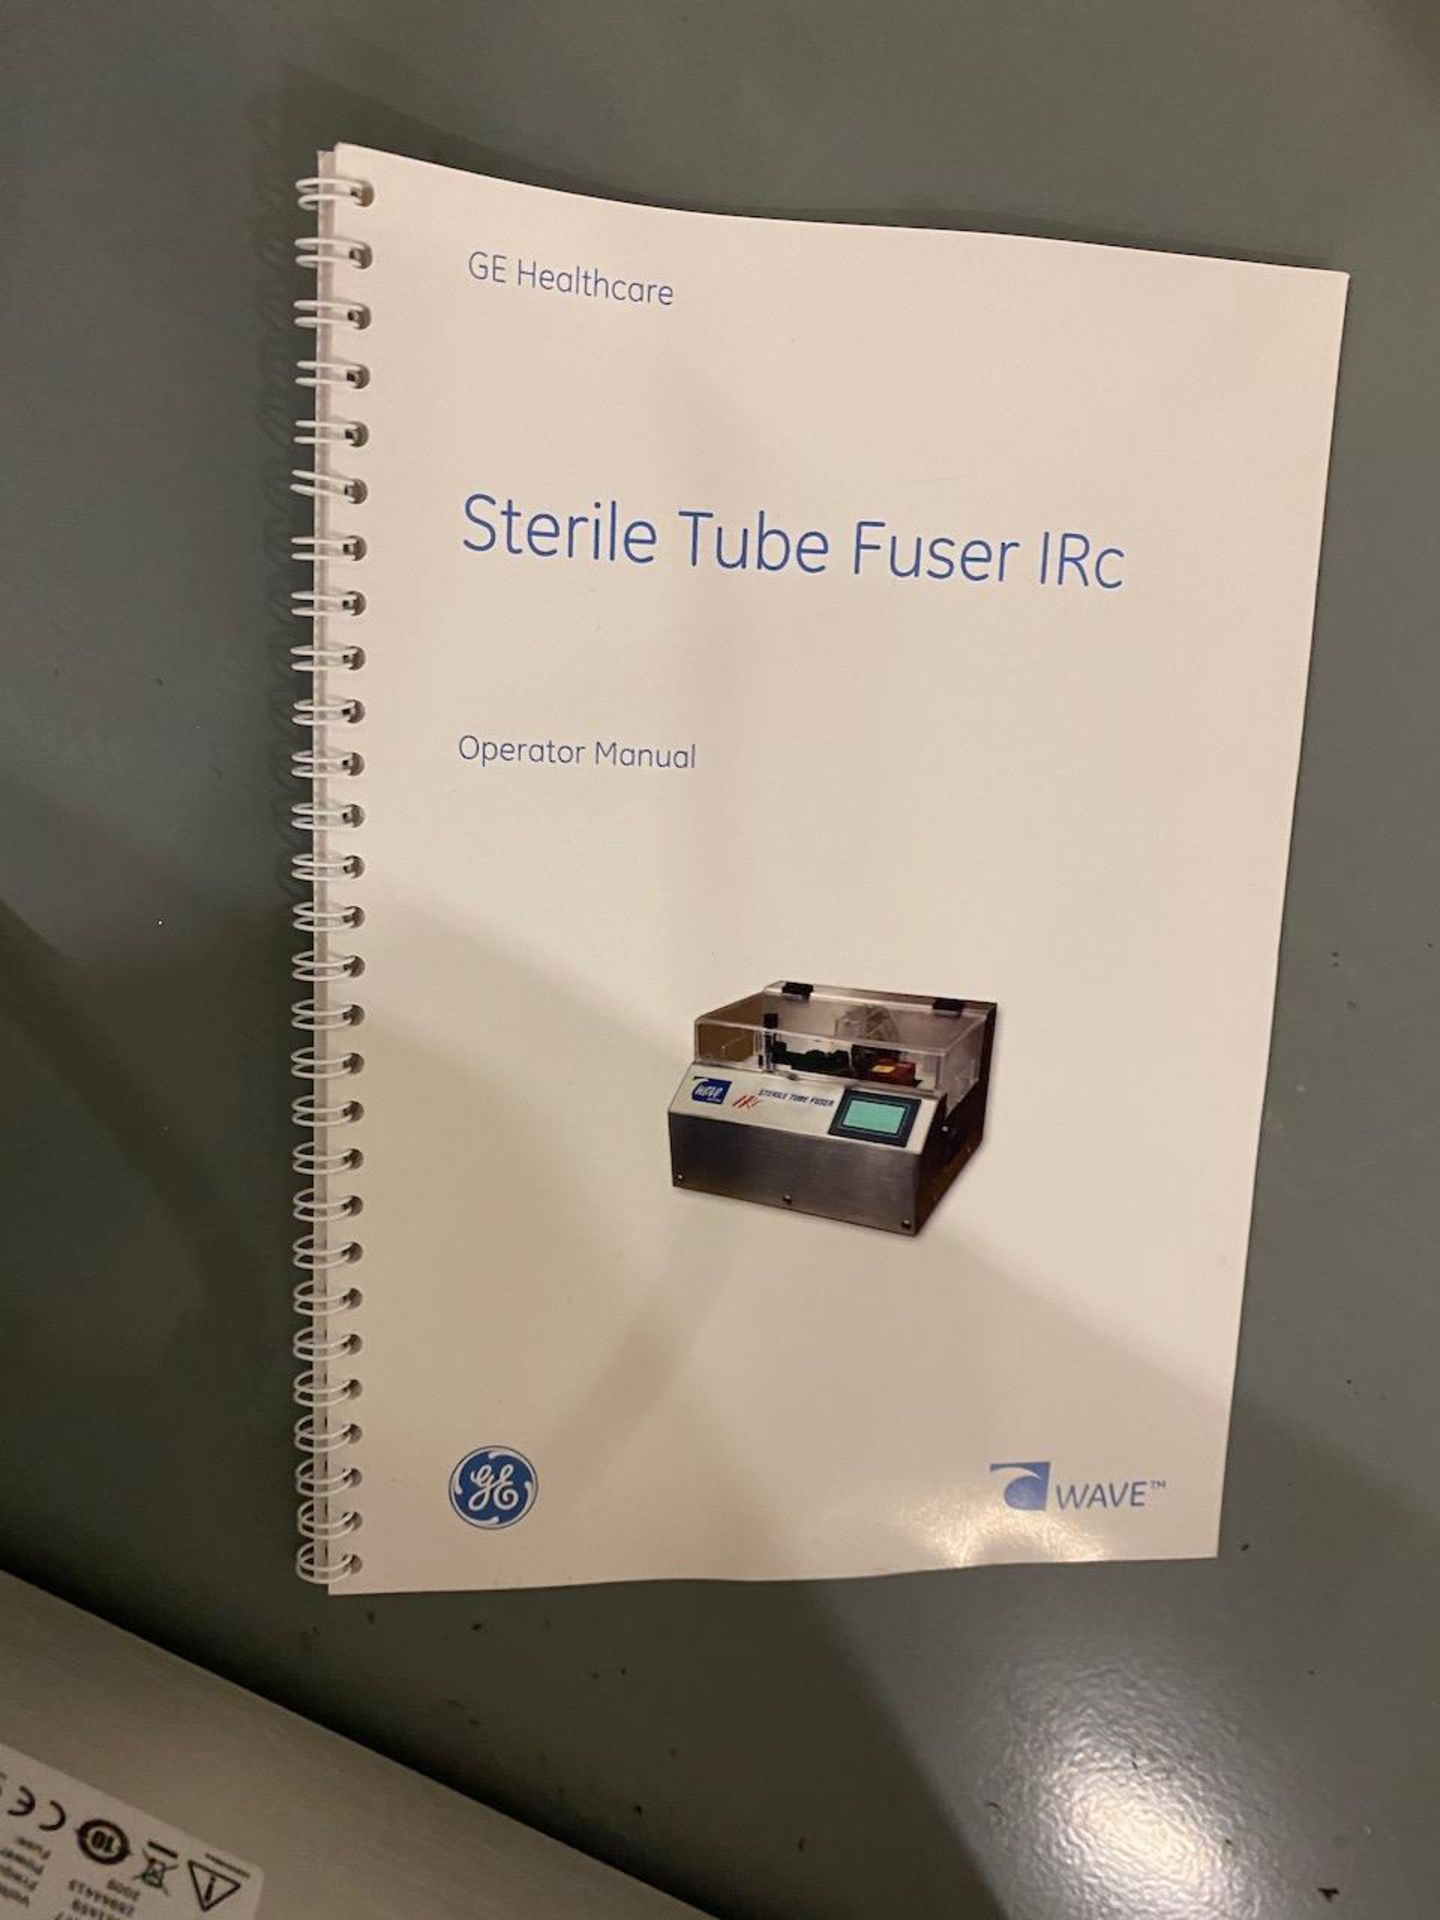 Tube fuser - Image 5 of 5